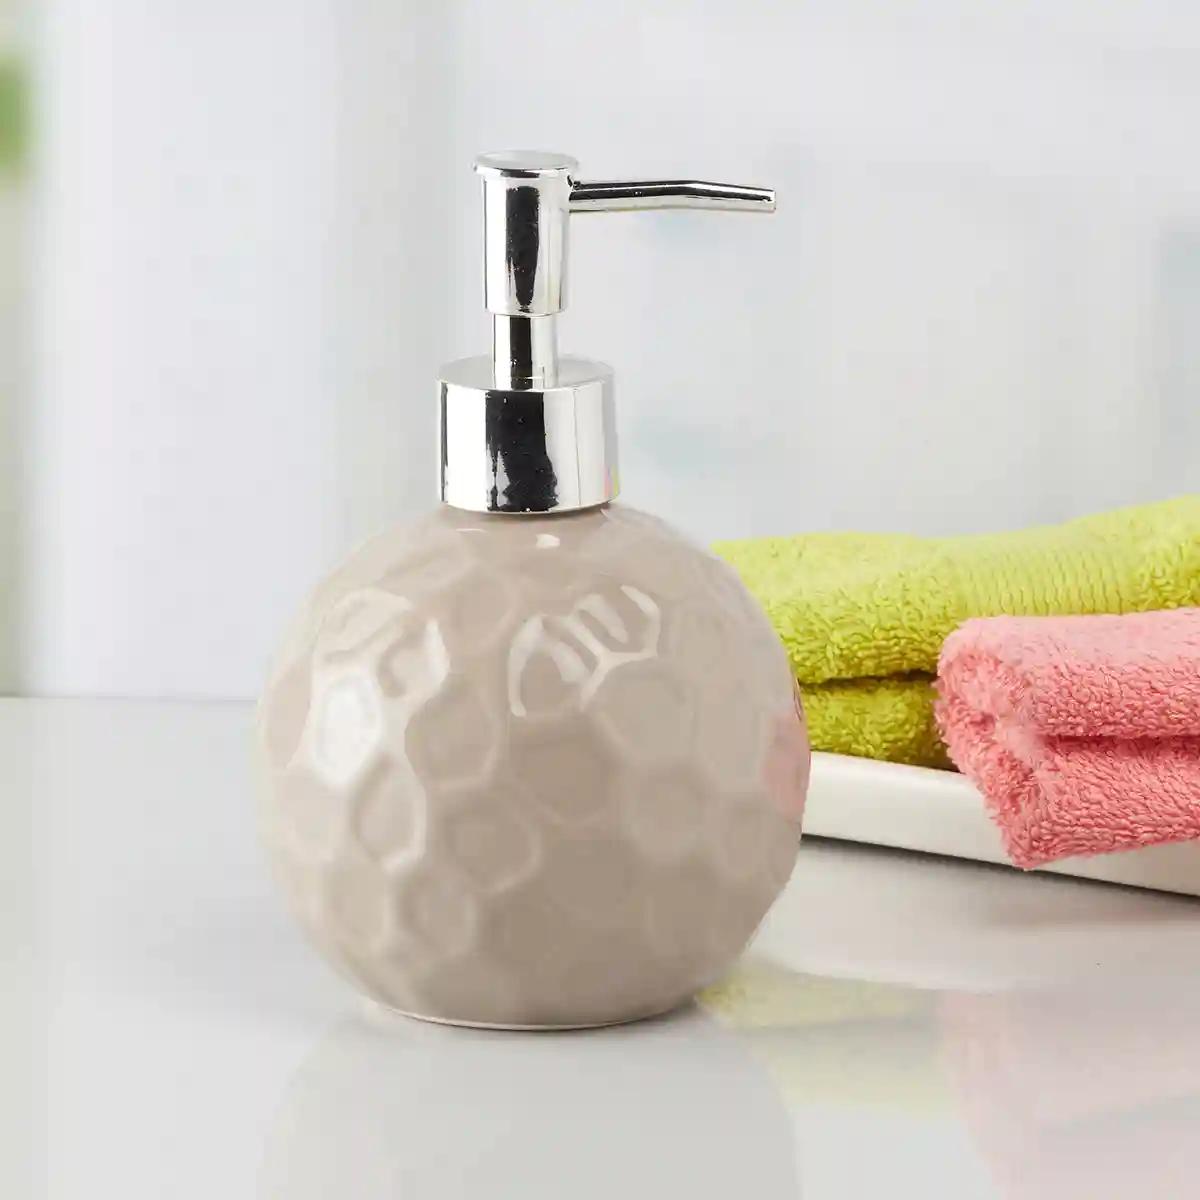 Kookee Ceramic Soap Dispenser for Bathroom handwash, refillable pump bottle for Kitchen hand wash basin, Set of 2 - Brown (8008)